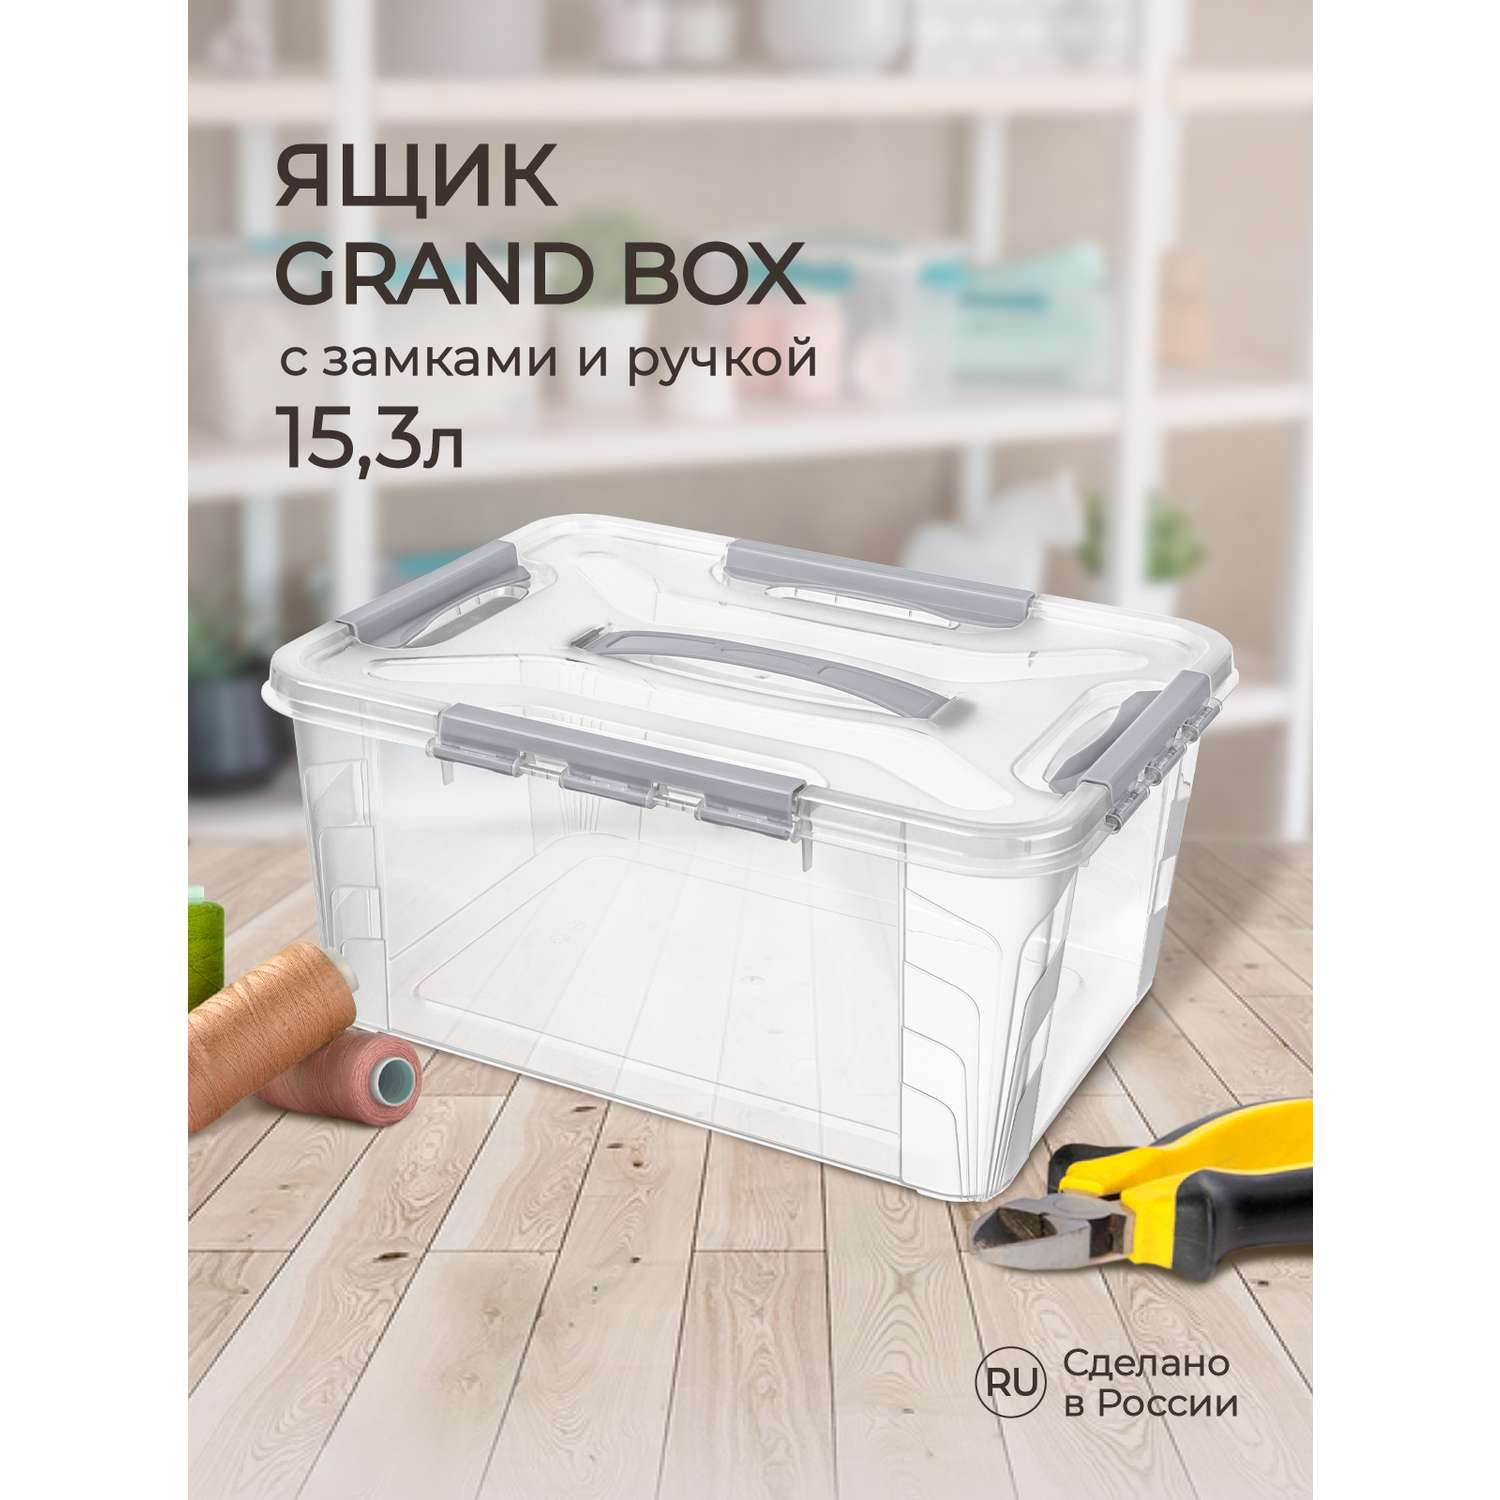 Ящик для хранения Econova универсальный с замками и ручкой Grand Box 15300 мл светло-серый - фото 1